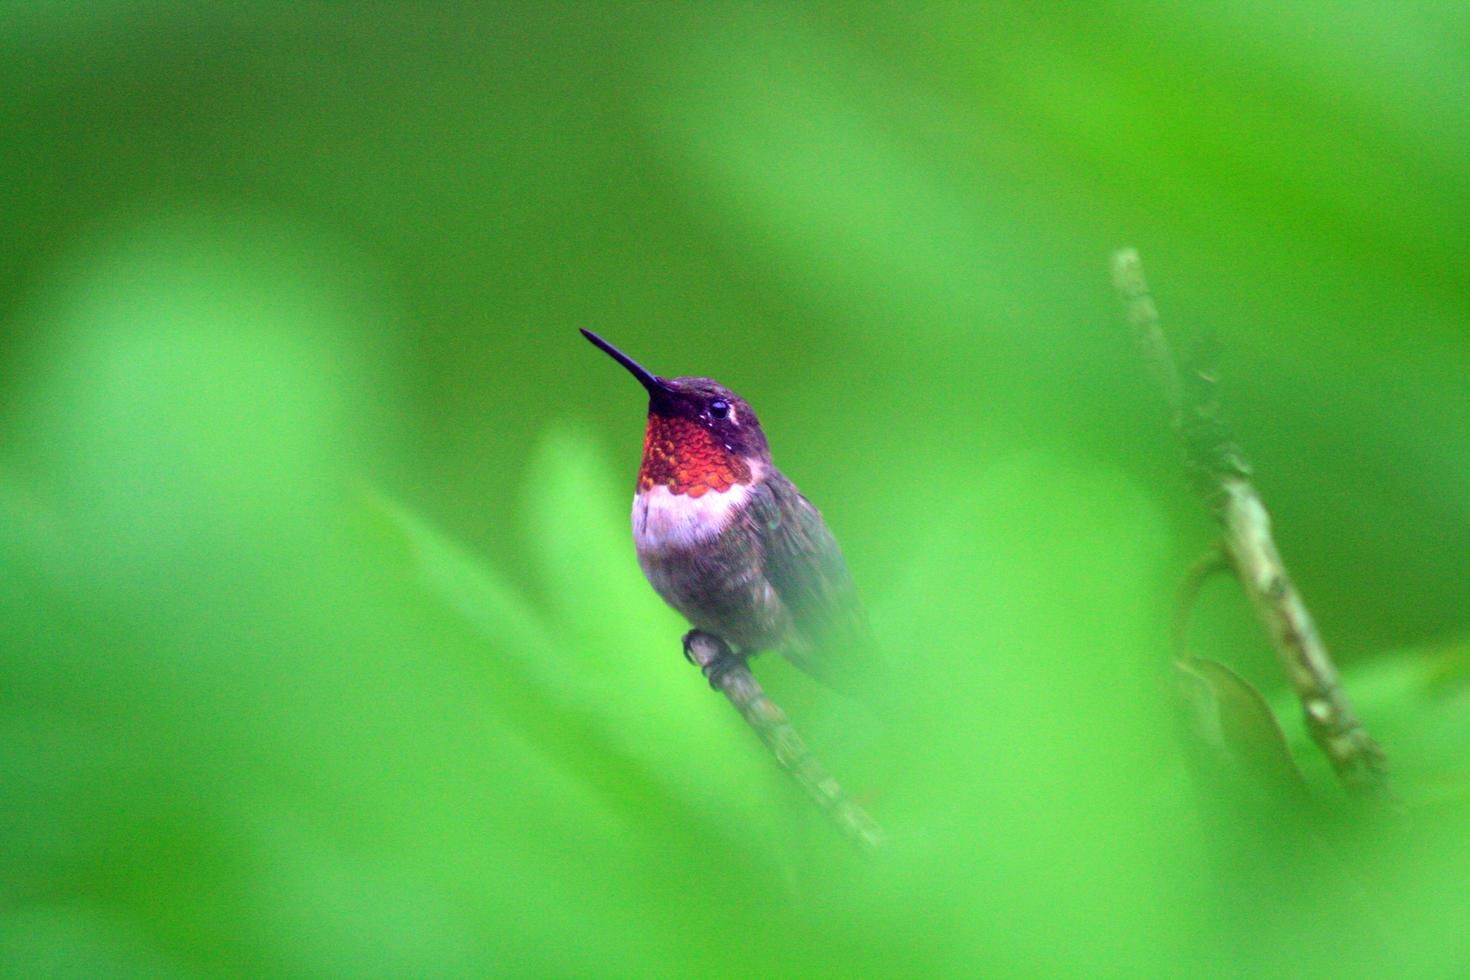 colibrì in guardia foto